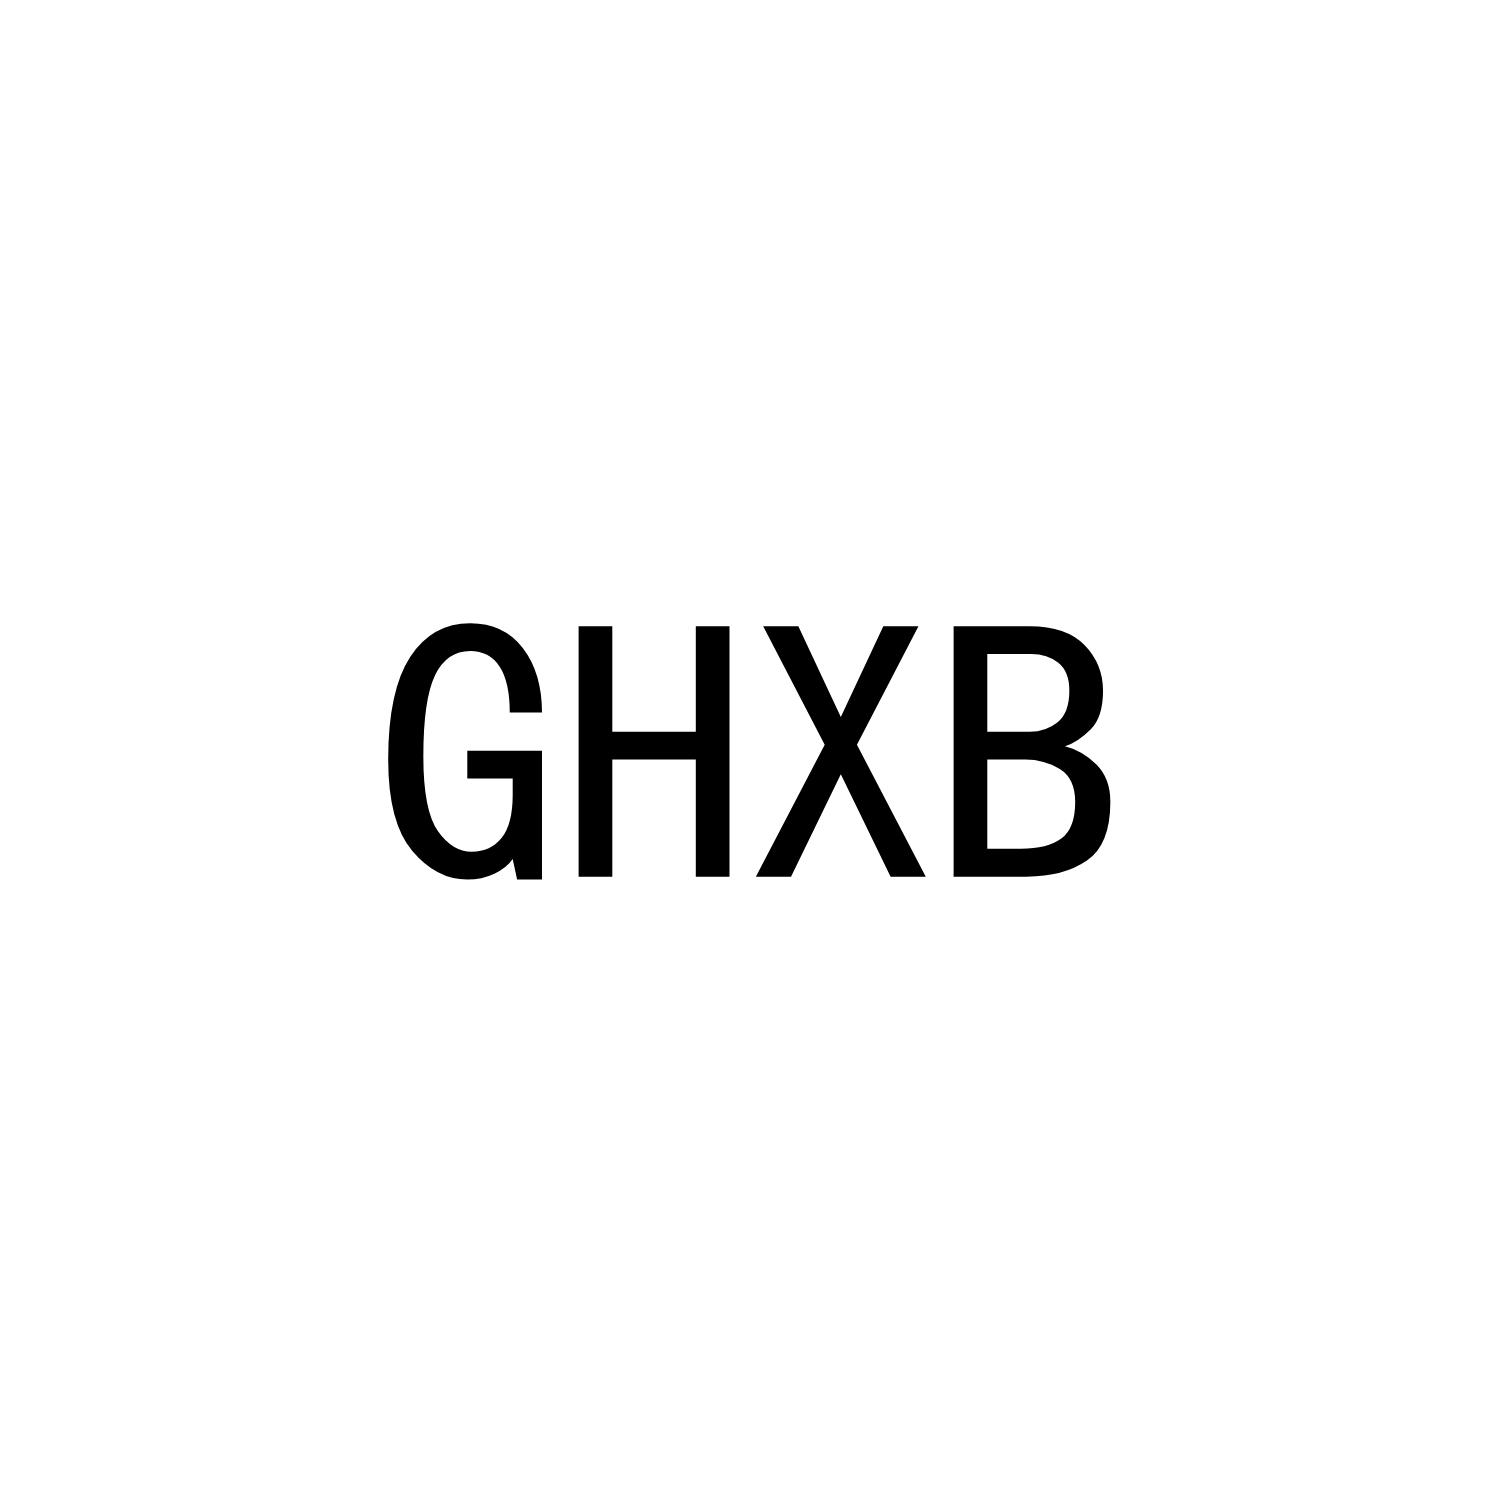 GHXB